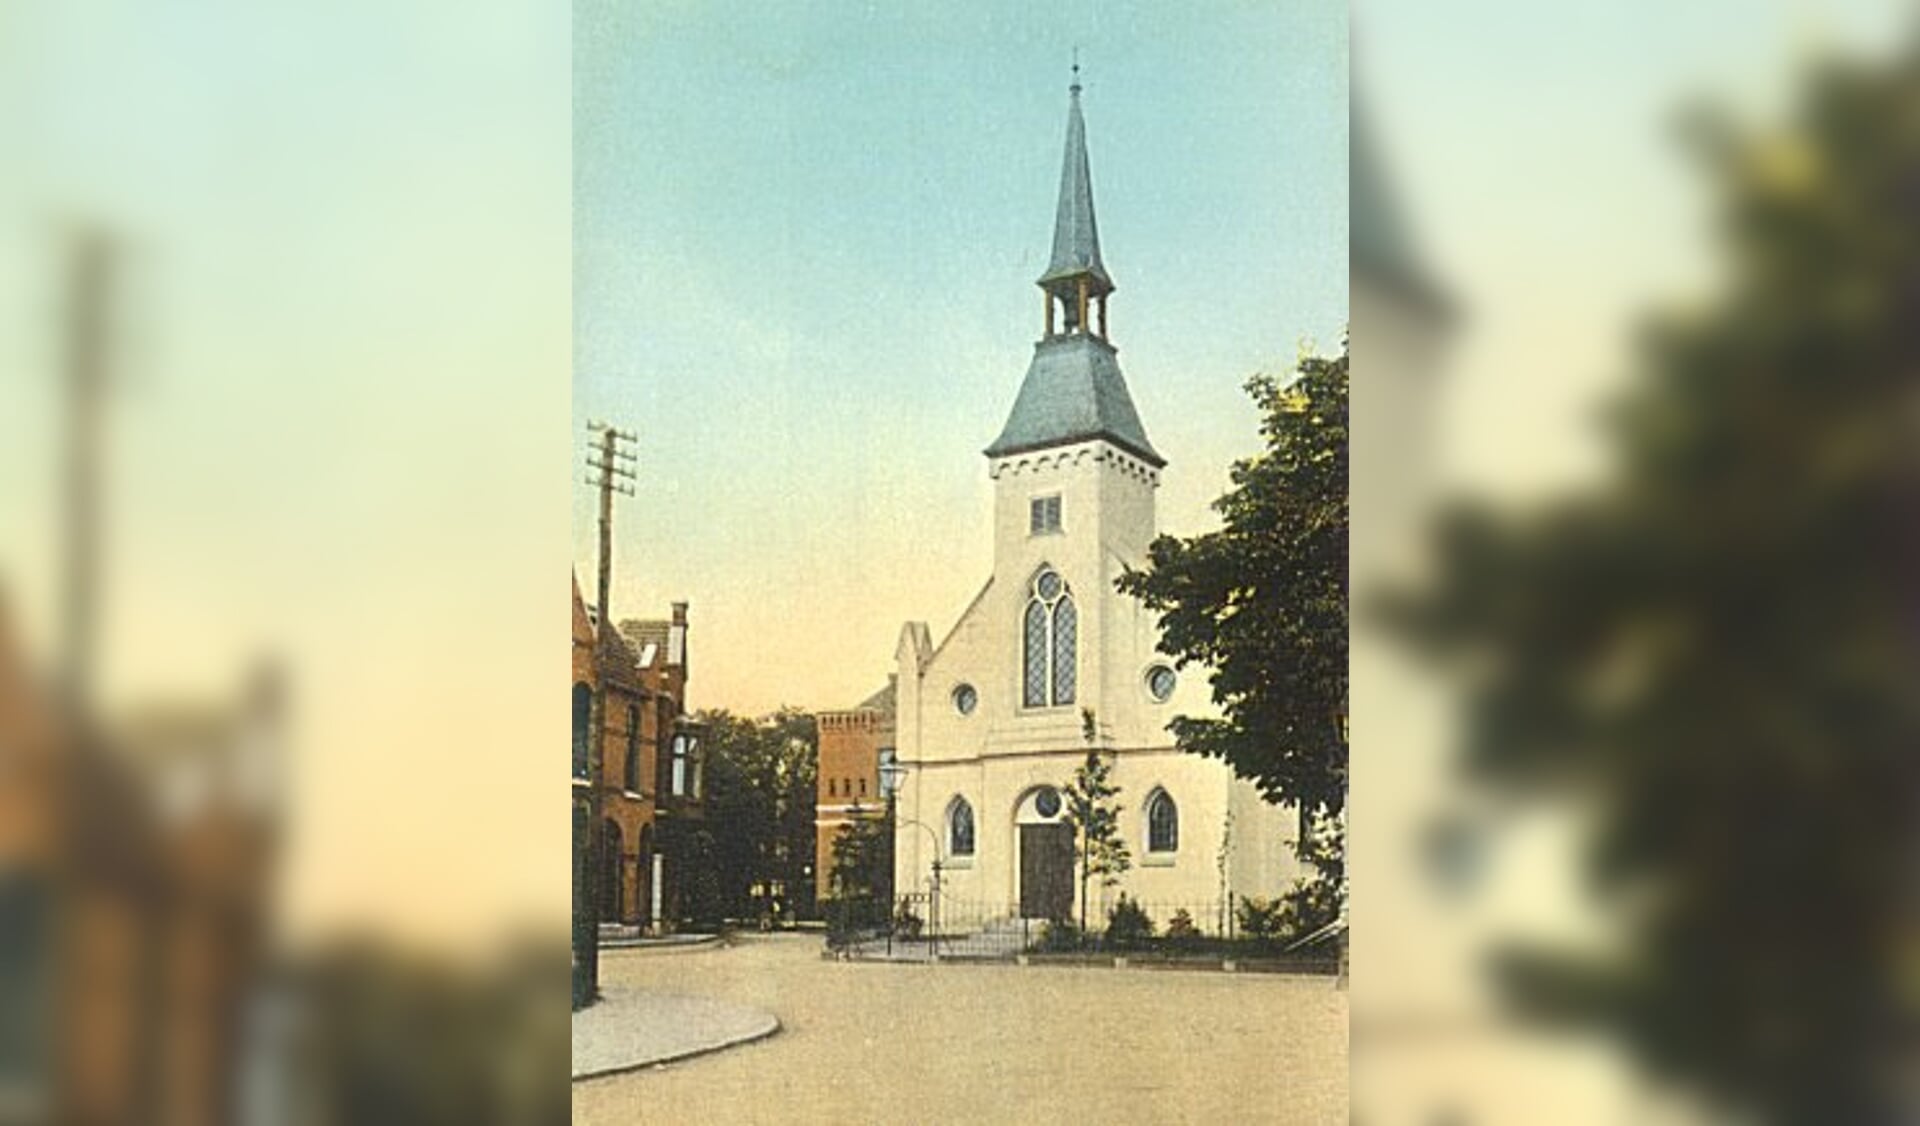 Het Nederlands Hervormd kerkje zoals het er in 1882 uitzag